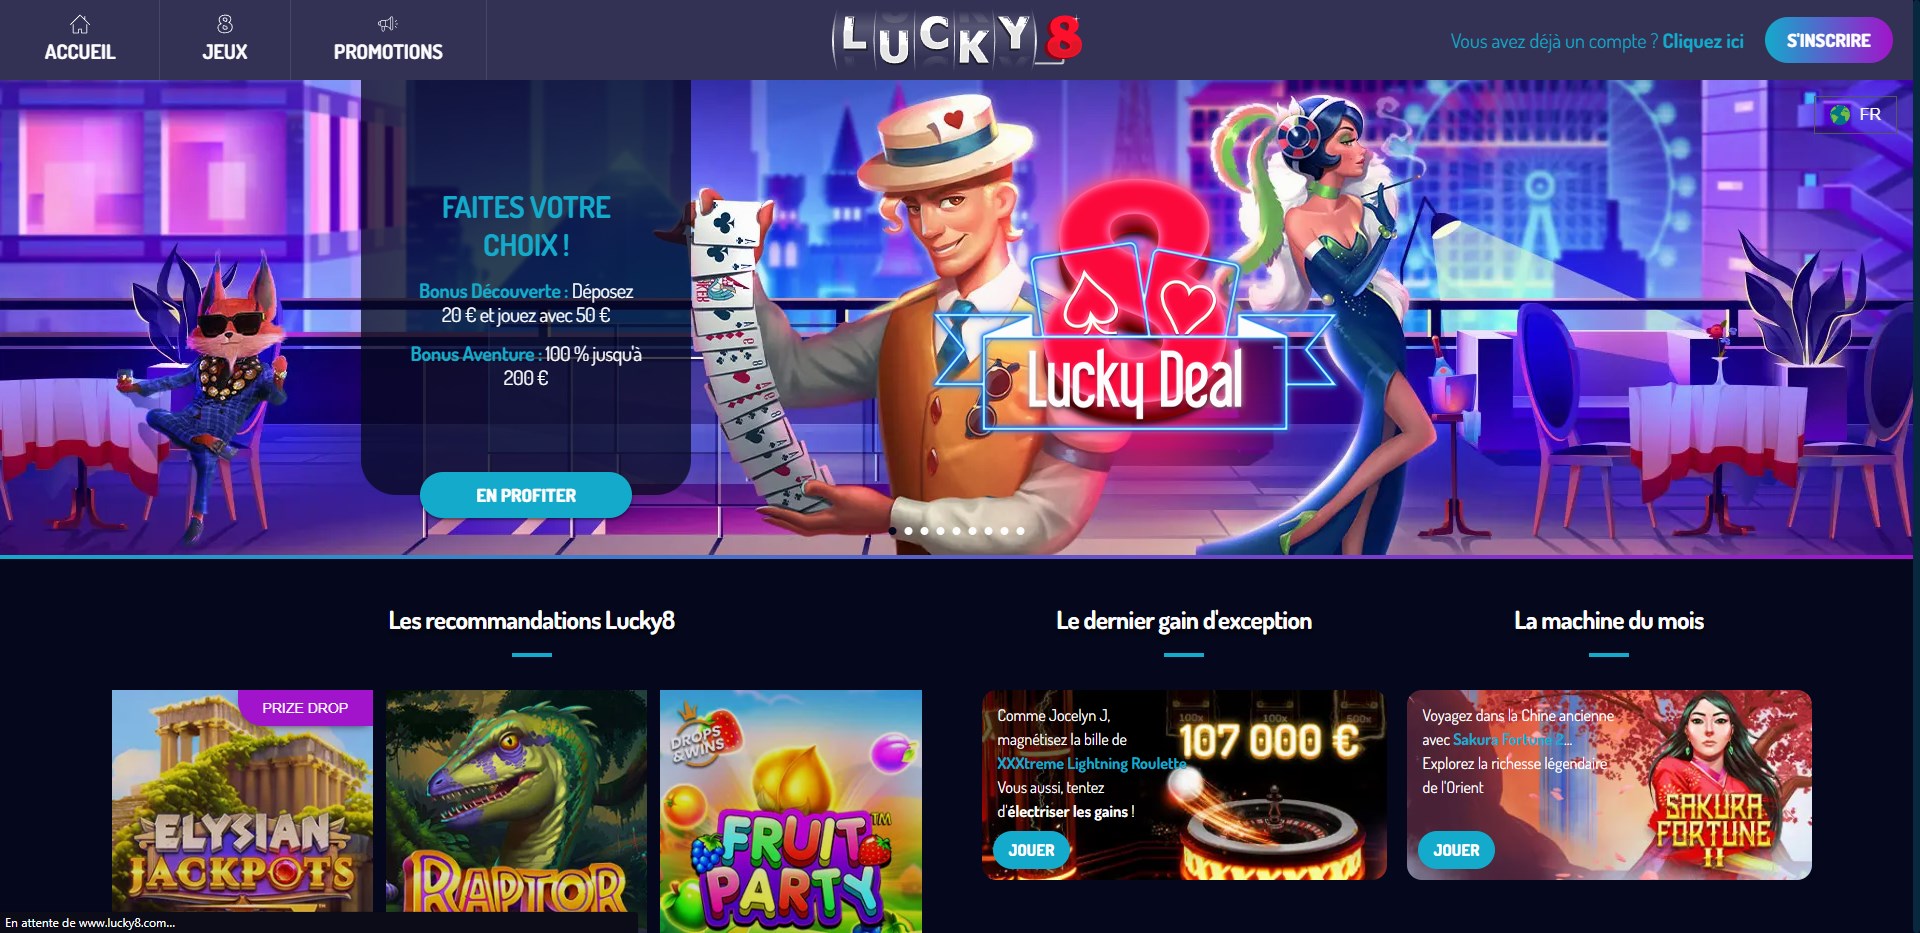 Lucky8 casino : Informazioni di base e aggiornate sui bonus e le promozioni 